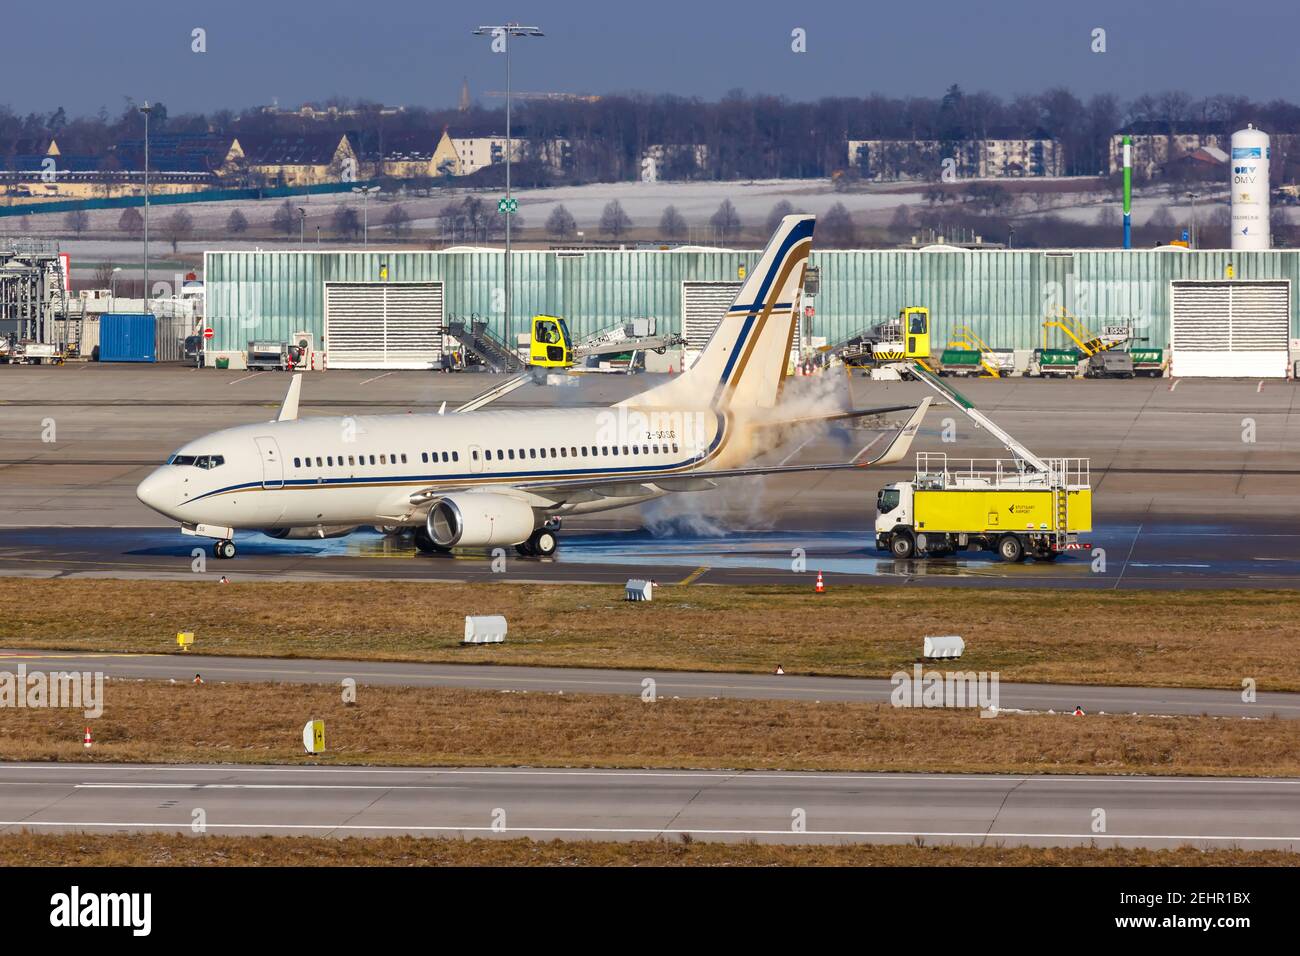 Stuttgart, Alemania - 15 de enero de 2021: Deshielo de un avión Gainjet Ireland Boeing 737-700(BBJ) en el aeropuerto de Stuttgart (STR) en Alemania. Foto de stock